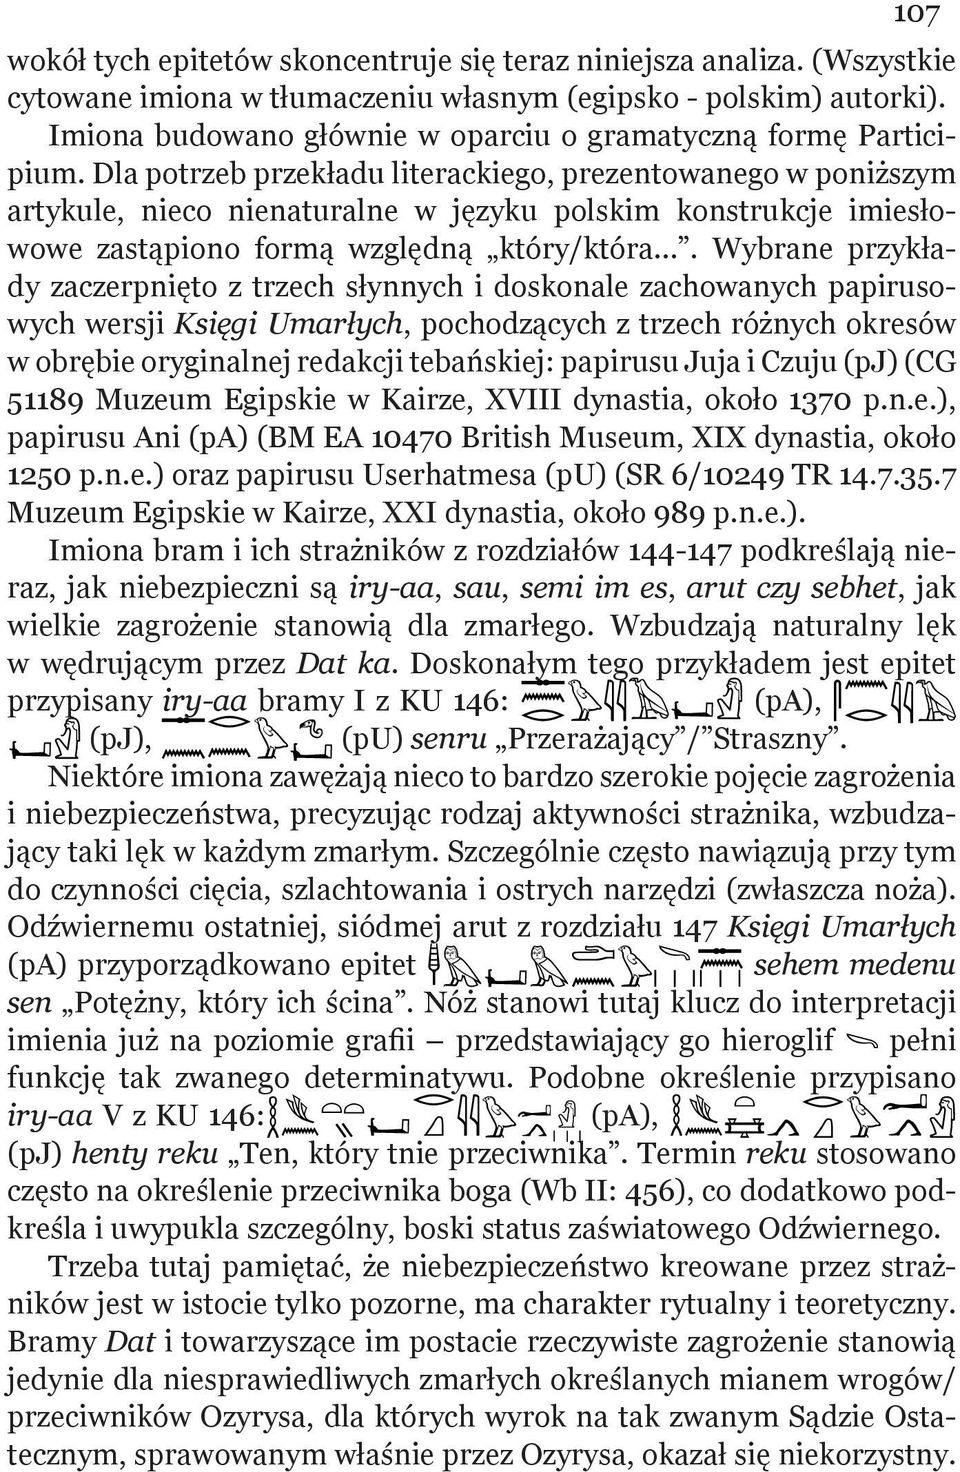 Dla potrzeb przekładu literackiego, prezentowanego w poniższym artykule, nieco nienaturalne w języku polskim konstrukcje imiesłowowe zastąpiono formą względną który/która.